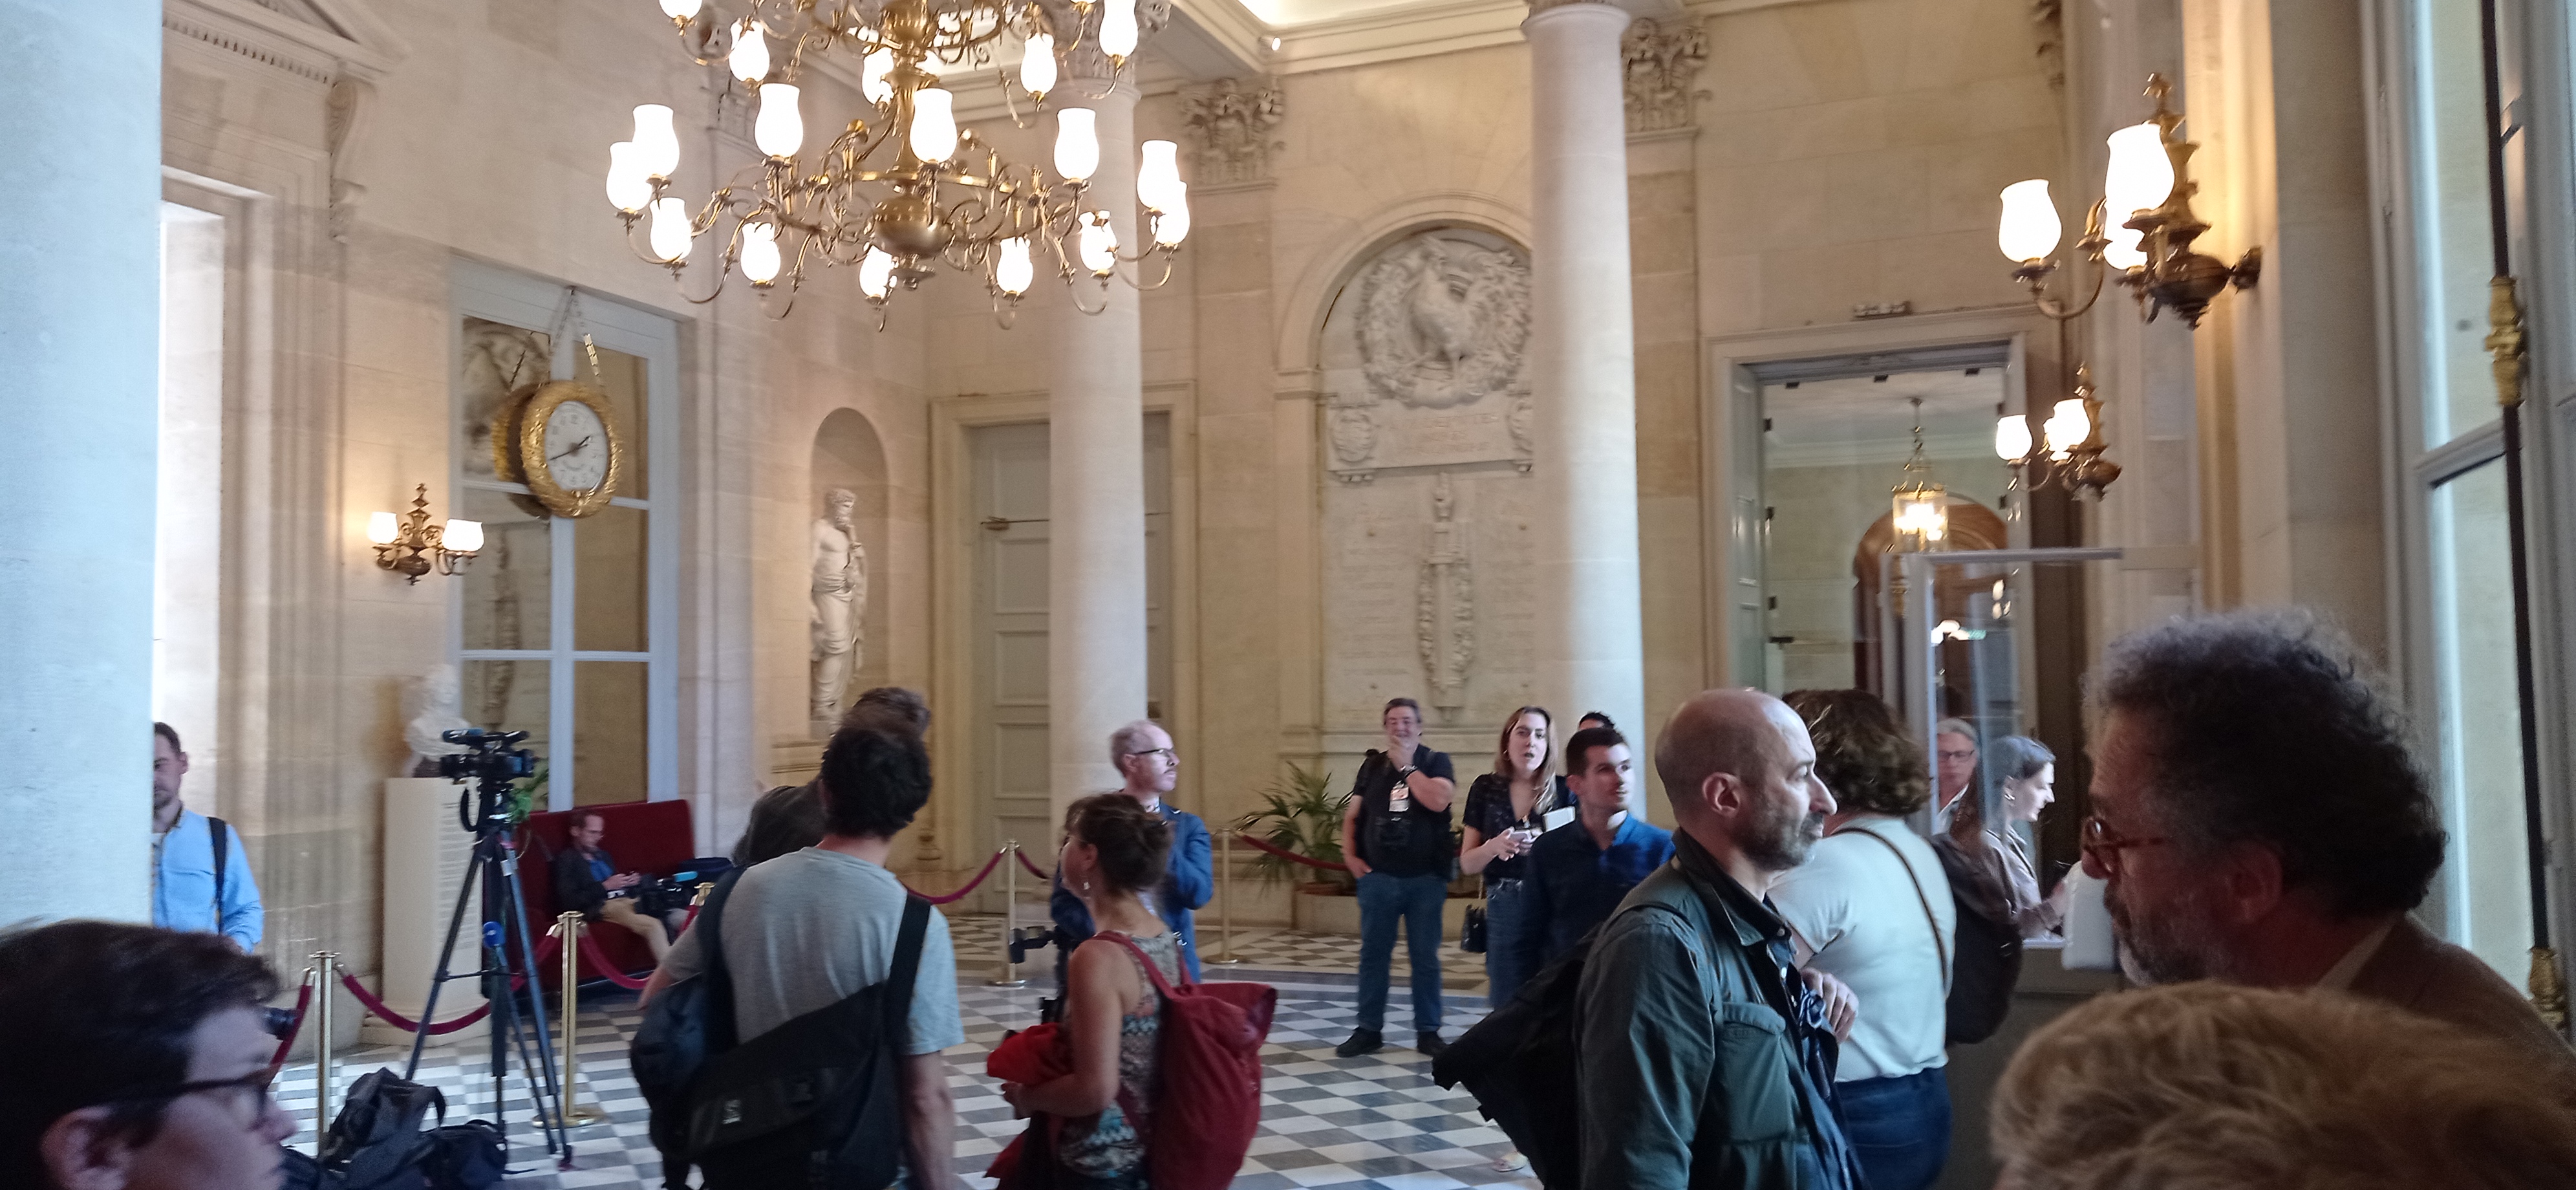 La salle des quatre colonnes où la presse attends les députés